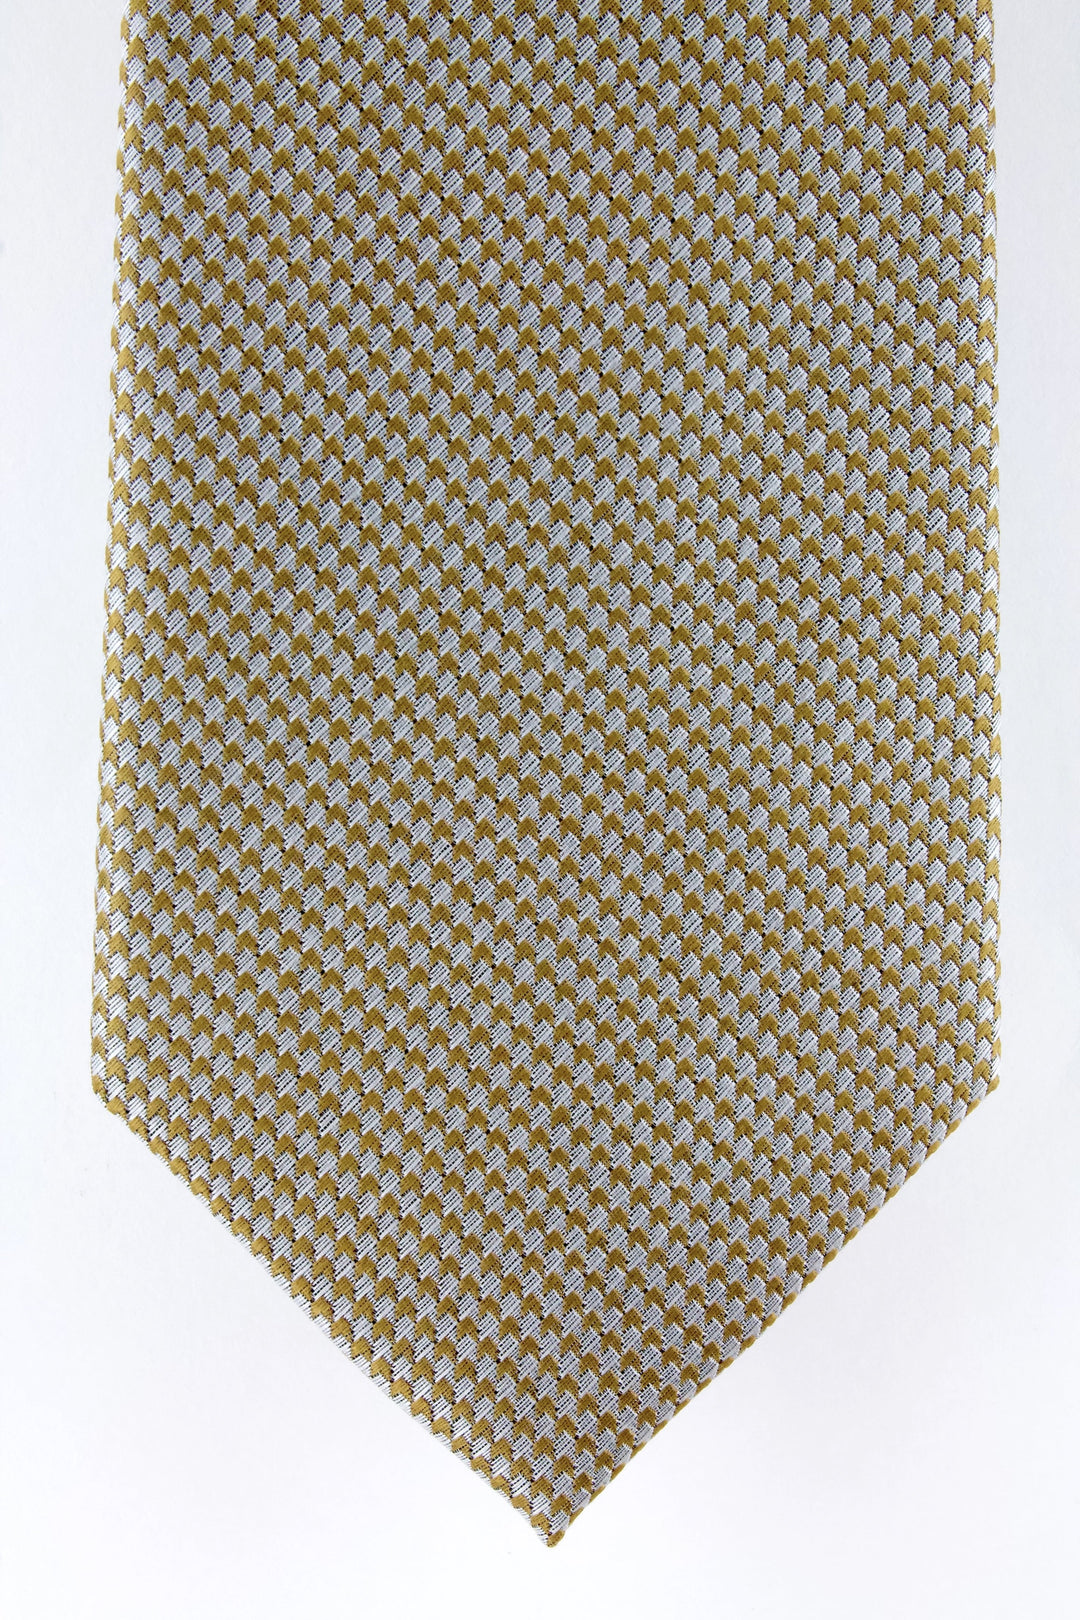 Cravate en soie tissée motif flèche beige